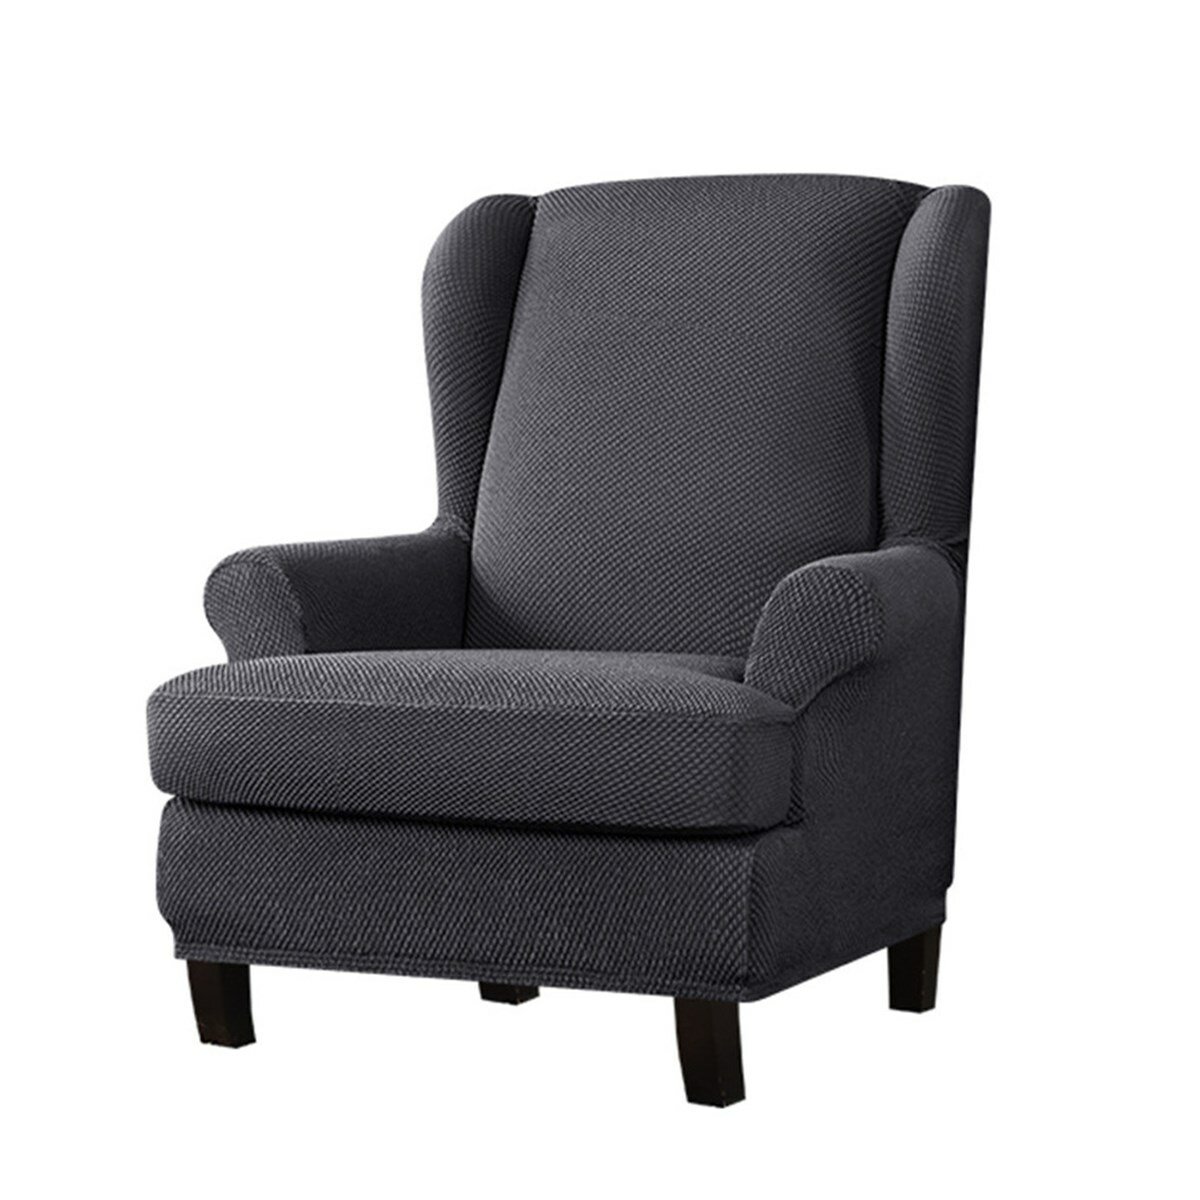 غطاء كرسي سميك قابل للتمدد واقي للأريكة من نسيج كسول قابل للغسل